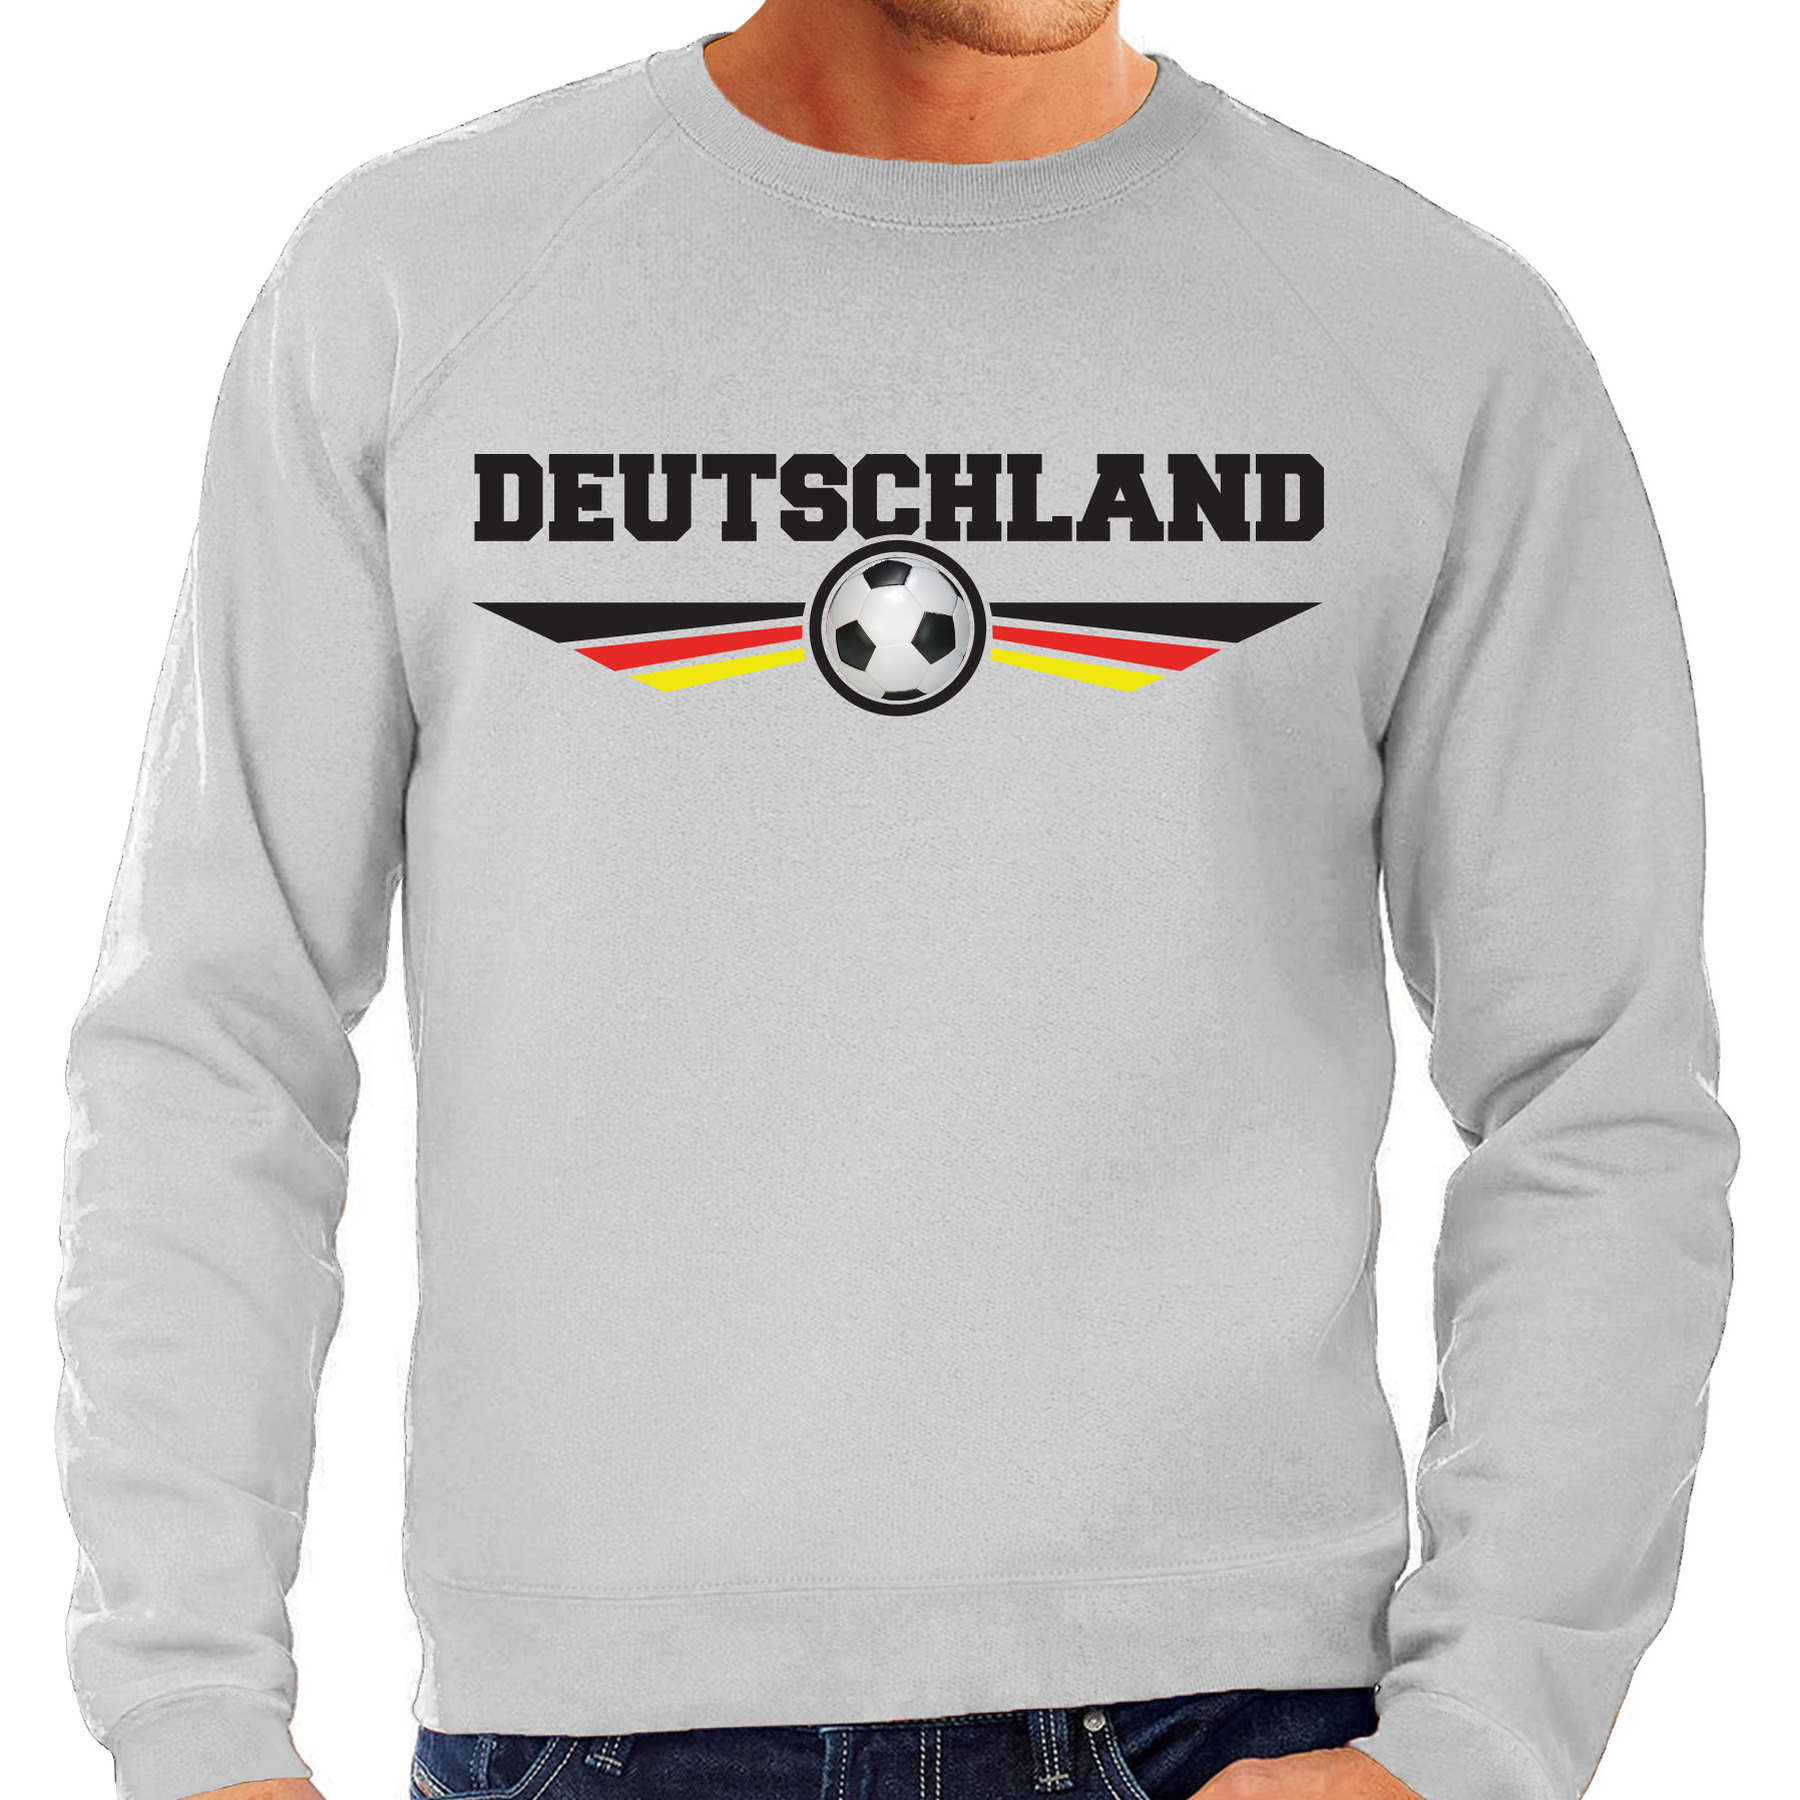 Duitsland-Deutschland landen-voetbal sweater grijs heren